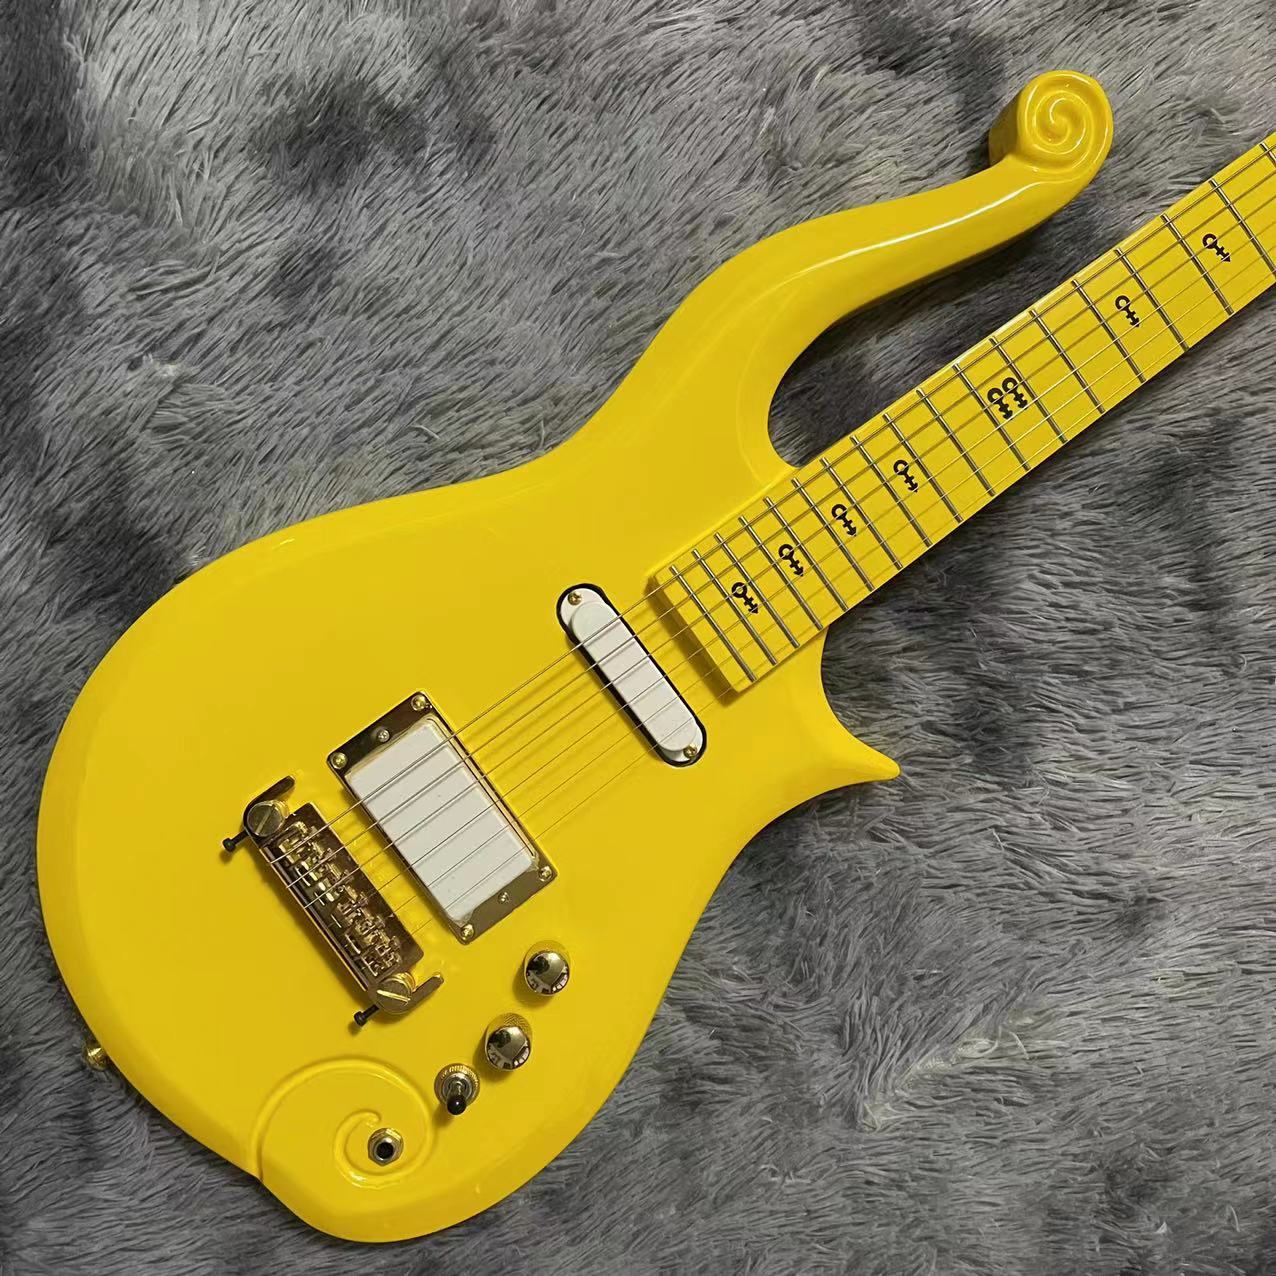 Niestandardowa klonowa podstrunnica szyi mahoniowa ciało księcia chmura gitara elektryczna z żółtym kolorem